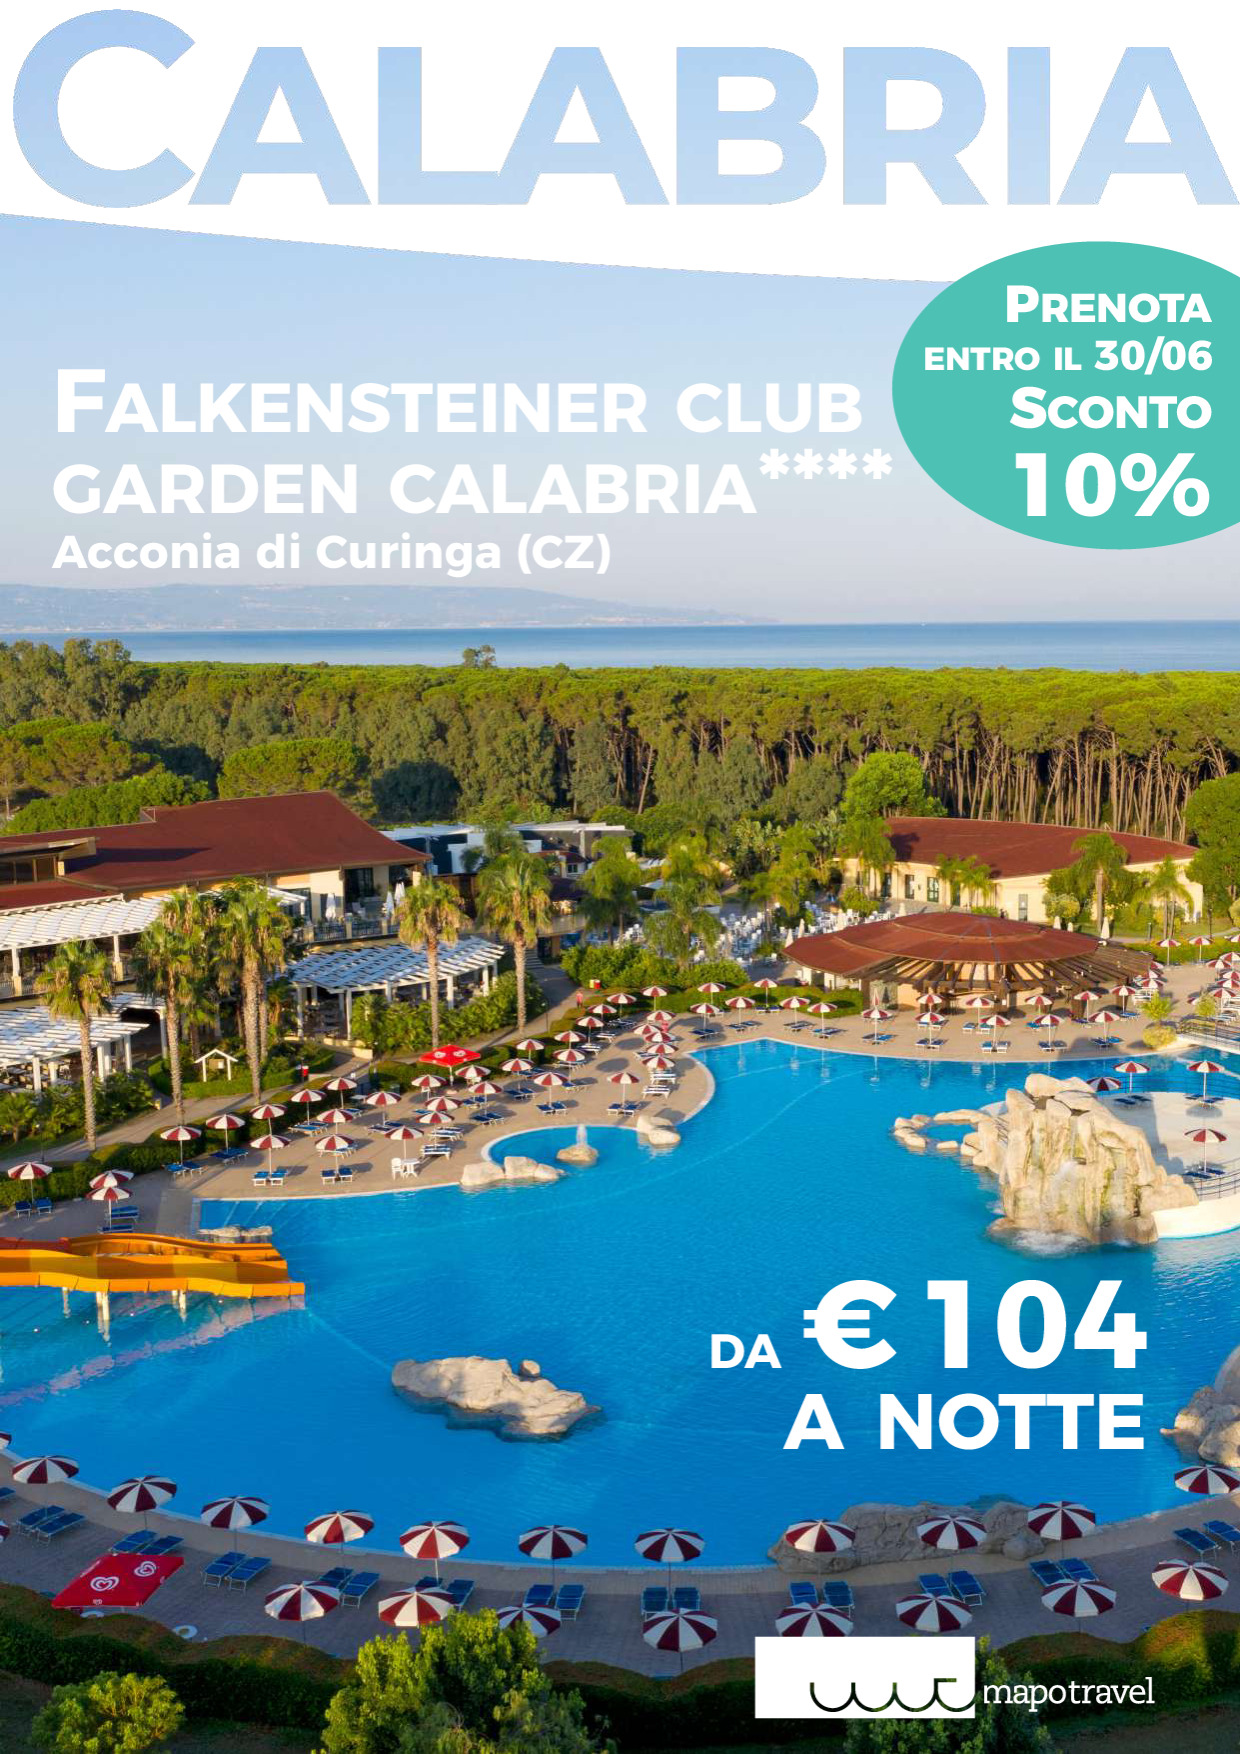 Falkensteiner Club Funimation Garden Calabria